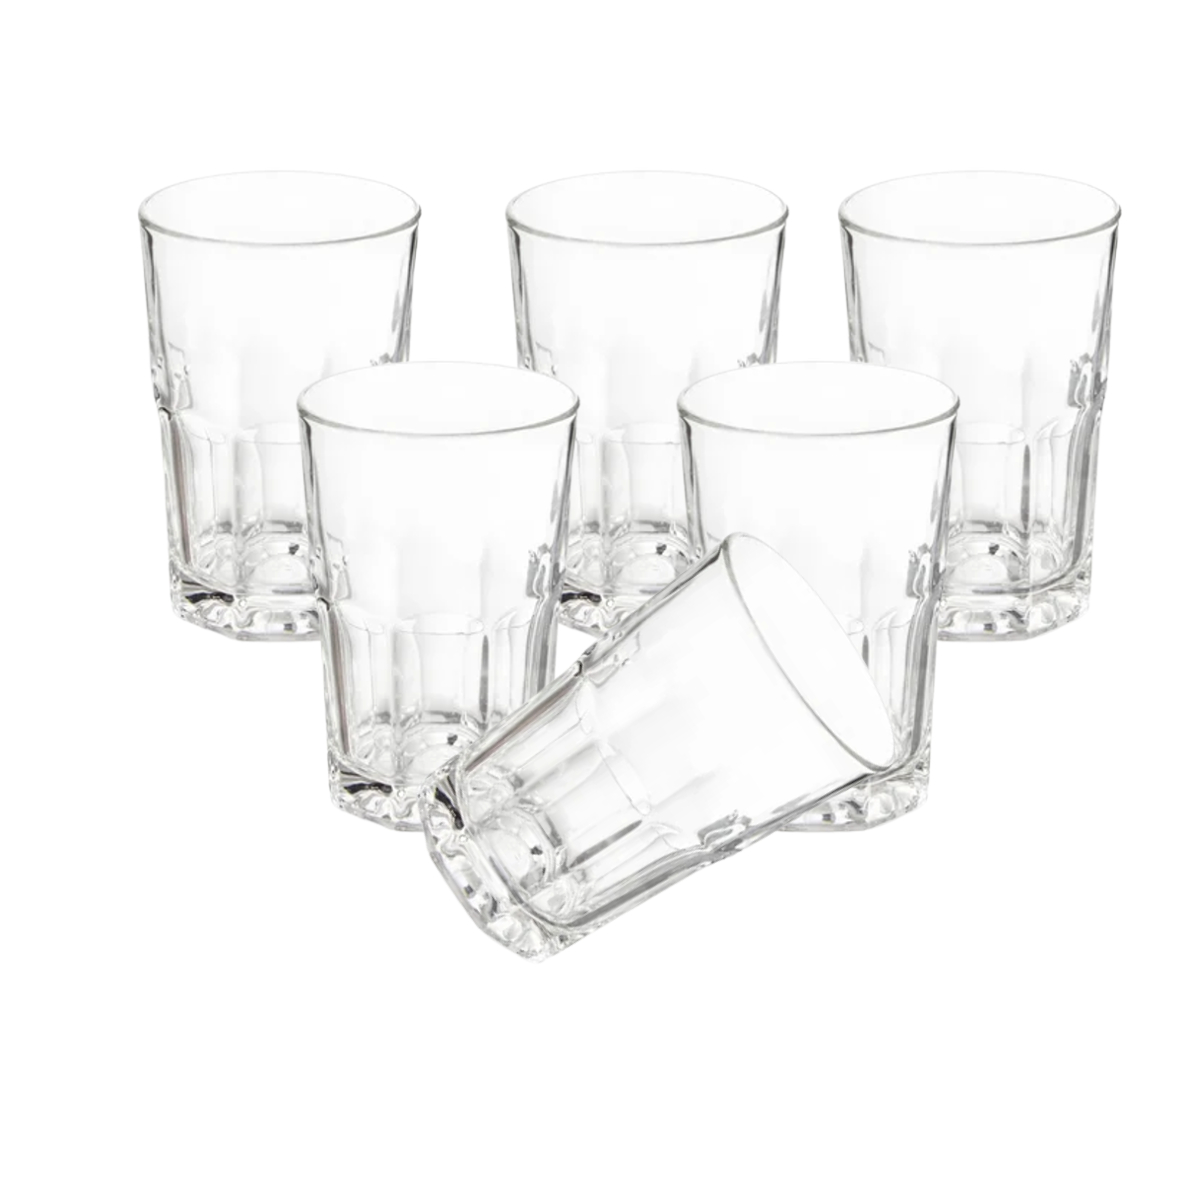  Le'raze Juego de 18 vasos de vidrio transparente, 6 vasos altos  de 17 onzas, 6 vasos de 13 onzas, 6 vasos DOF de 7 onzas, juego de  cristalería con diseño de